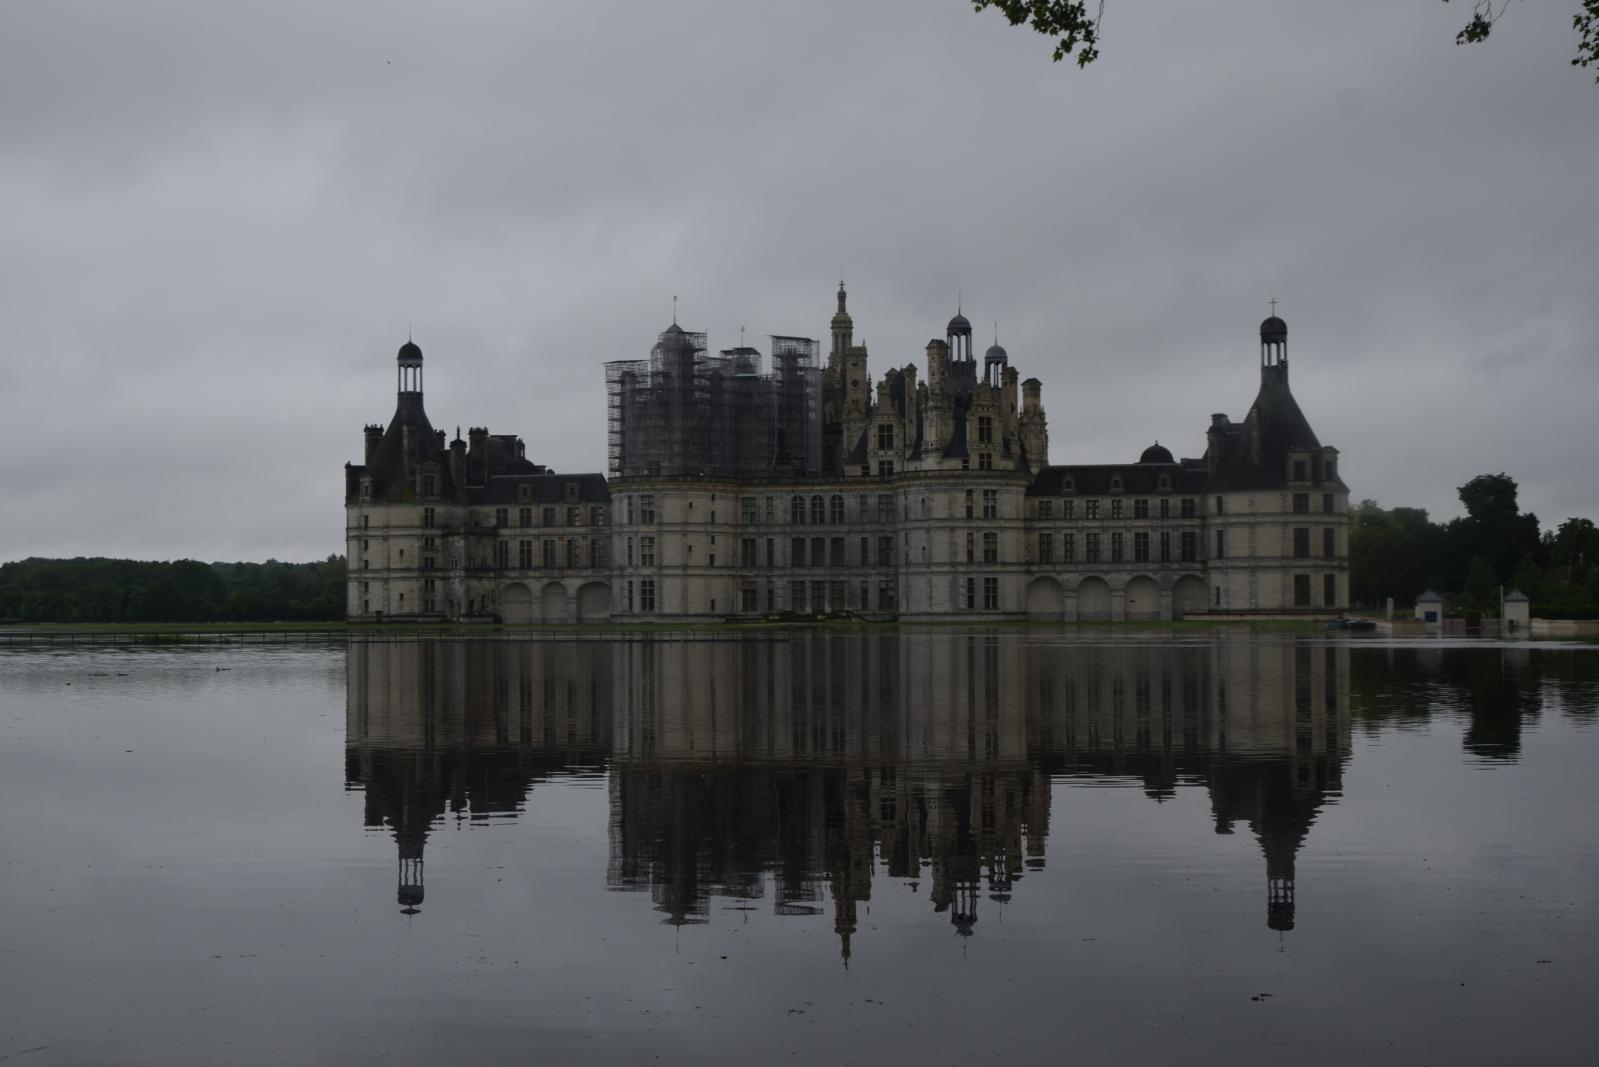 Suite à son inondation le 1er juin 2016, le château de Chambord a lancé une souscription publique pour sa restauration, en partenariat avec la Fondati